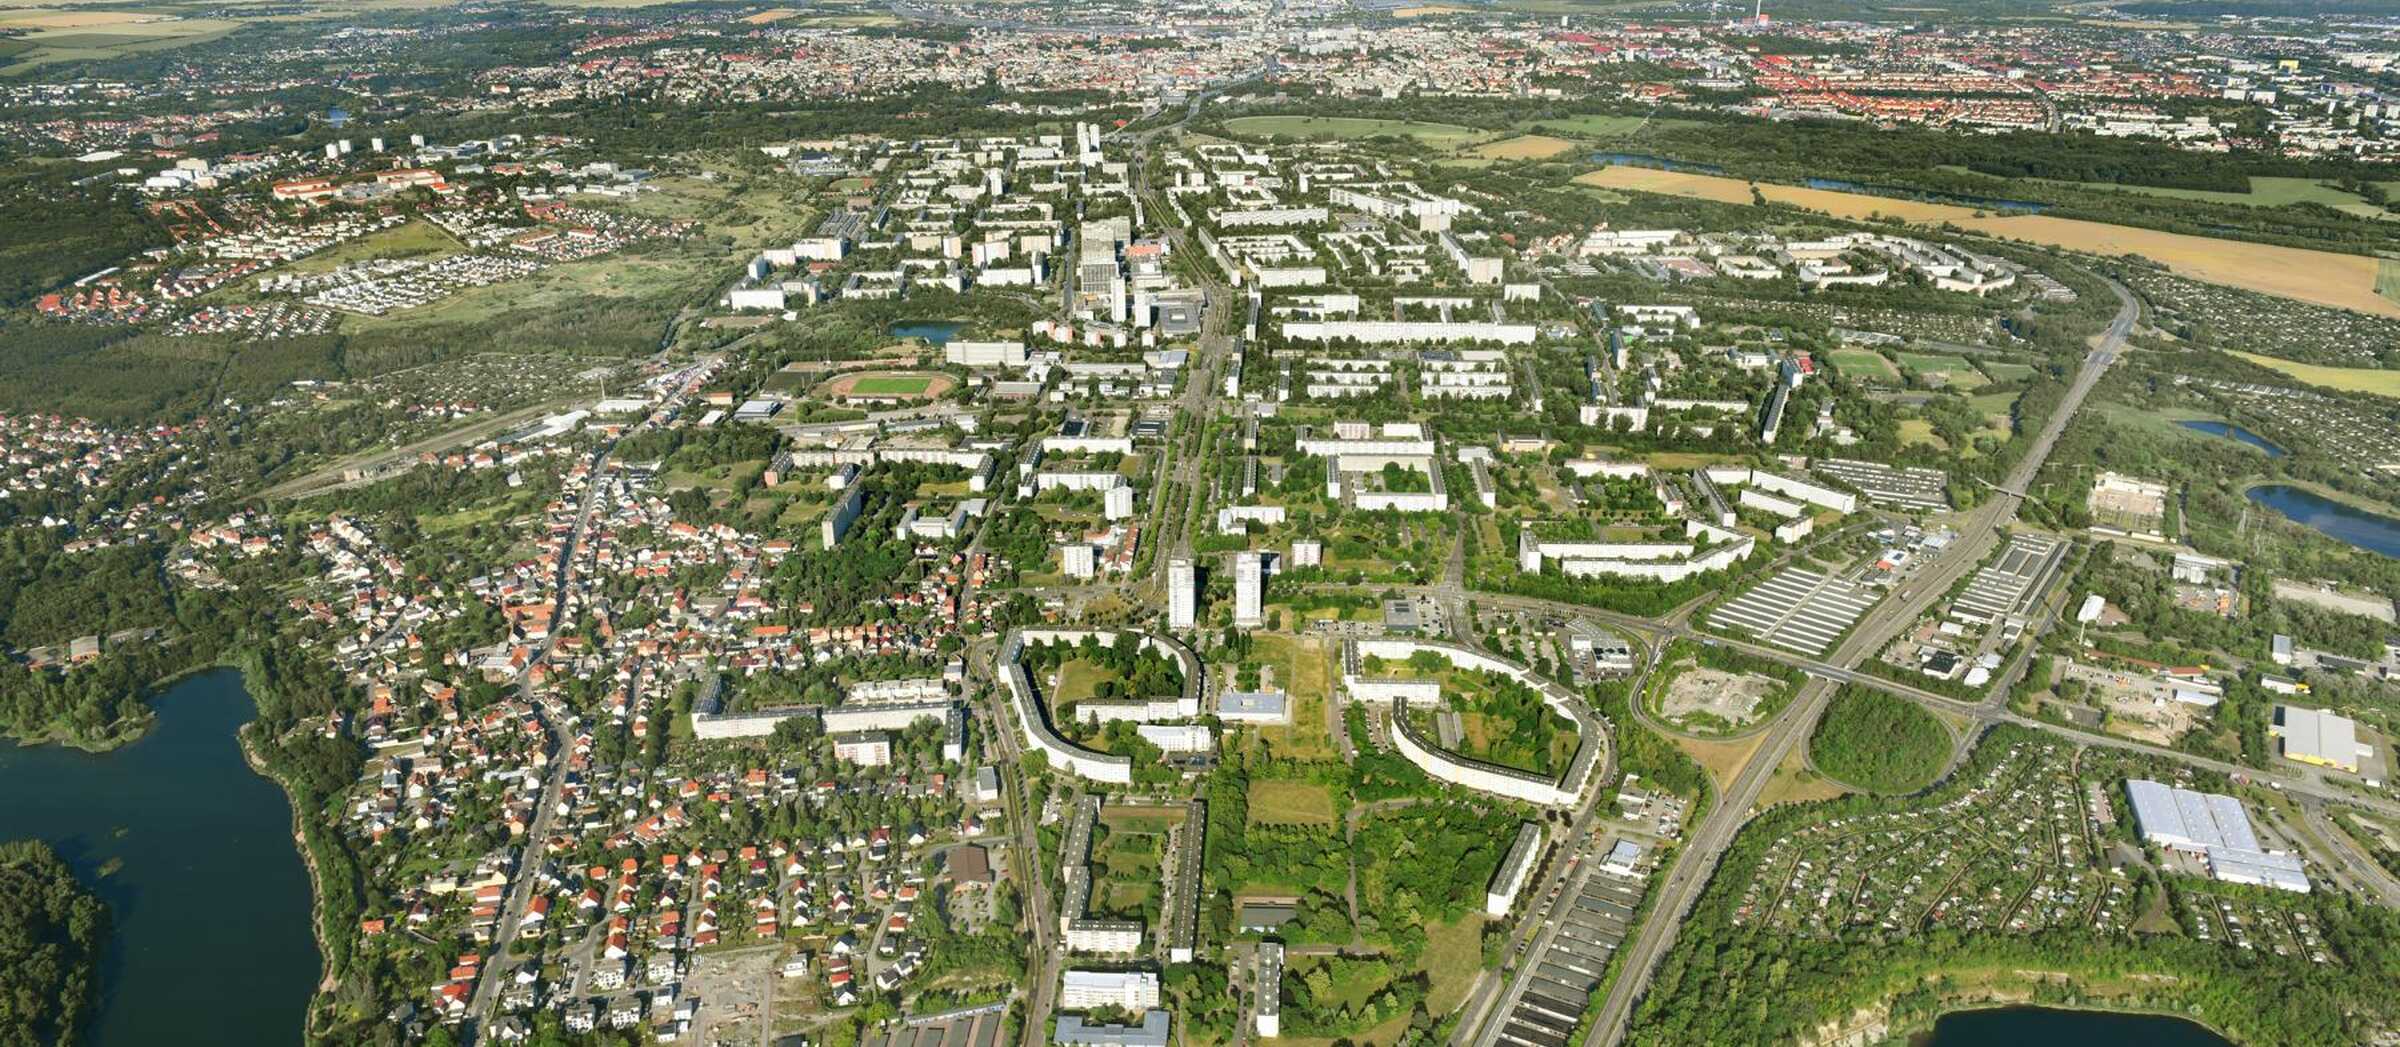 60 Jahre Halle Neustadt